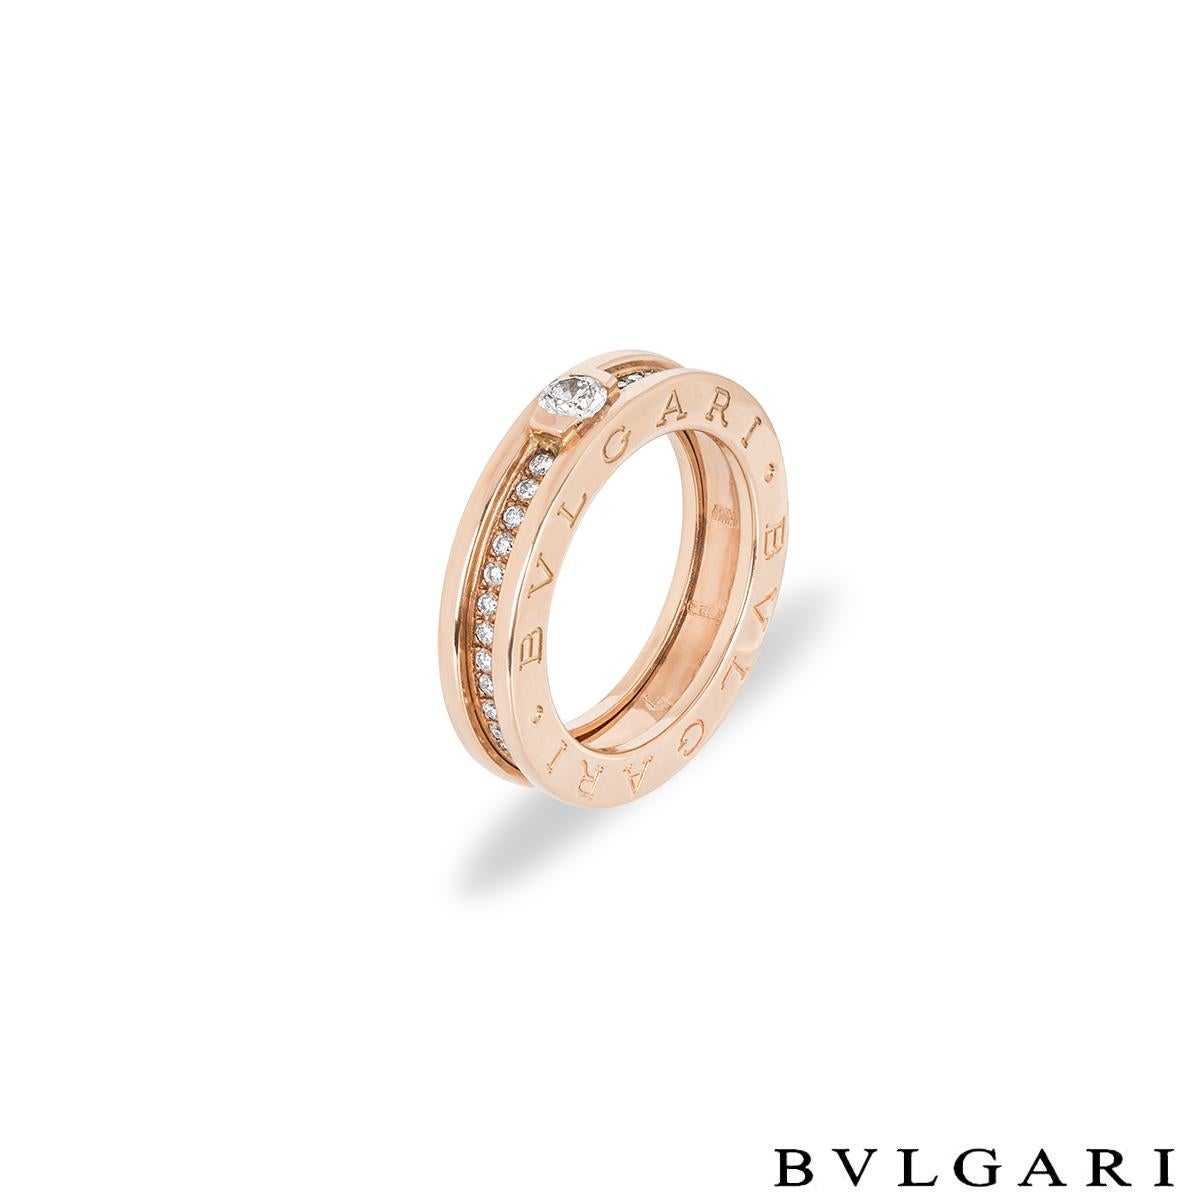 Ein Bvlgari-Ring aus 18 Karat Roségold mit Diamanten aus der Kollektion B.Zero1. In der Mitte des Rings befindet sich ein runder Diamant im Brillantschliff von 0,30 Karat in einer Spannfassung, Farbe F und Reinheit VVS2. Der Mittelstein wird von 40